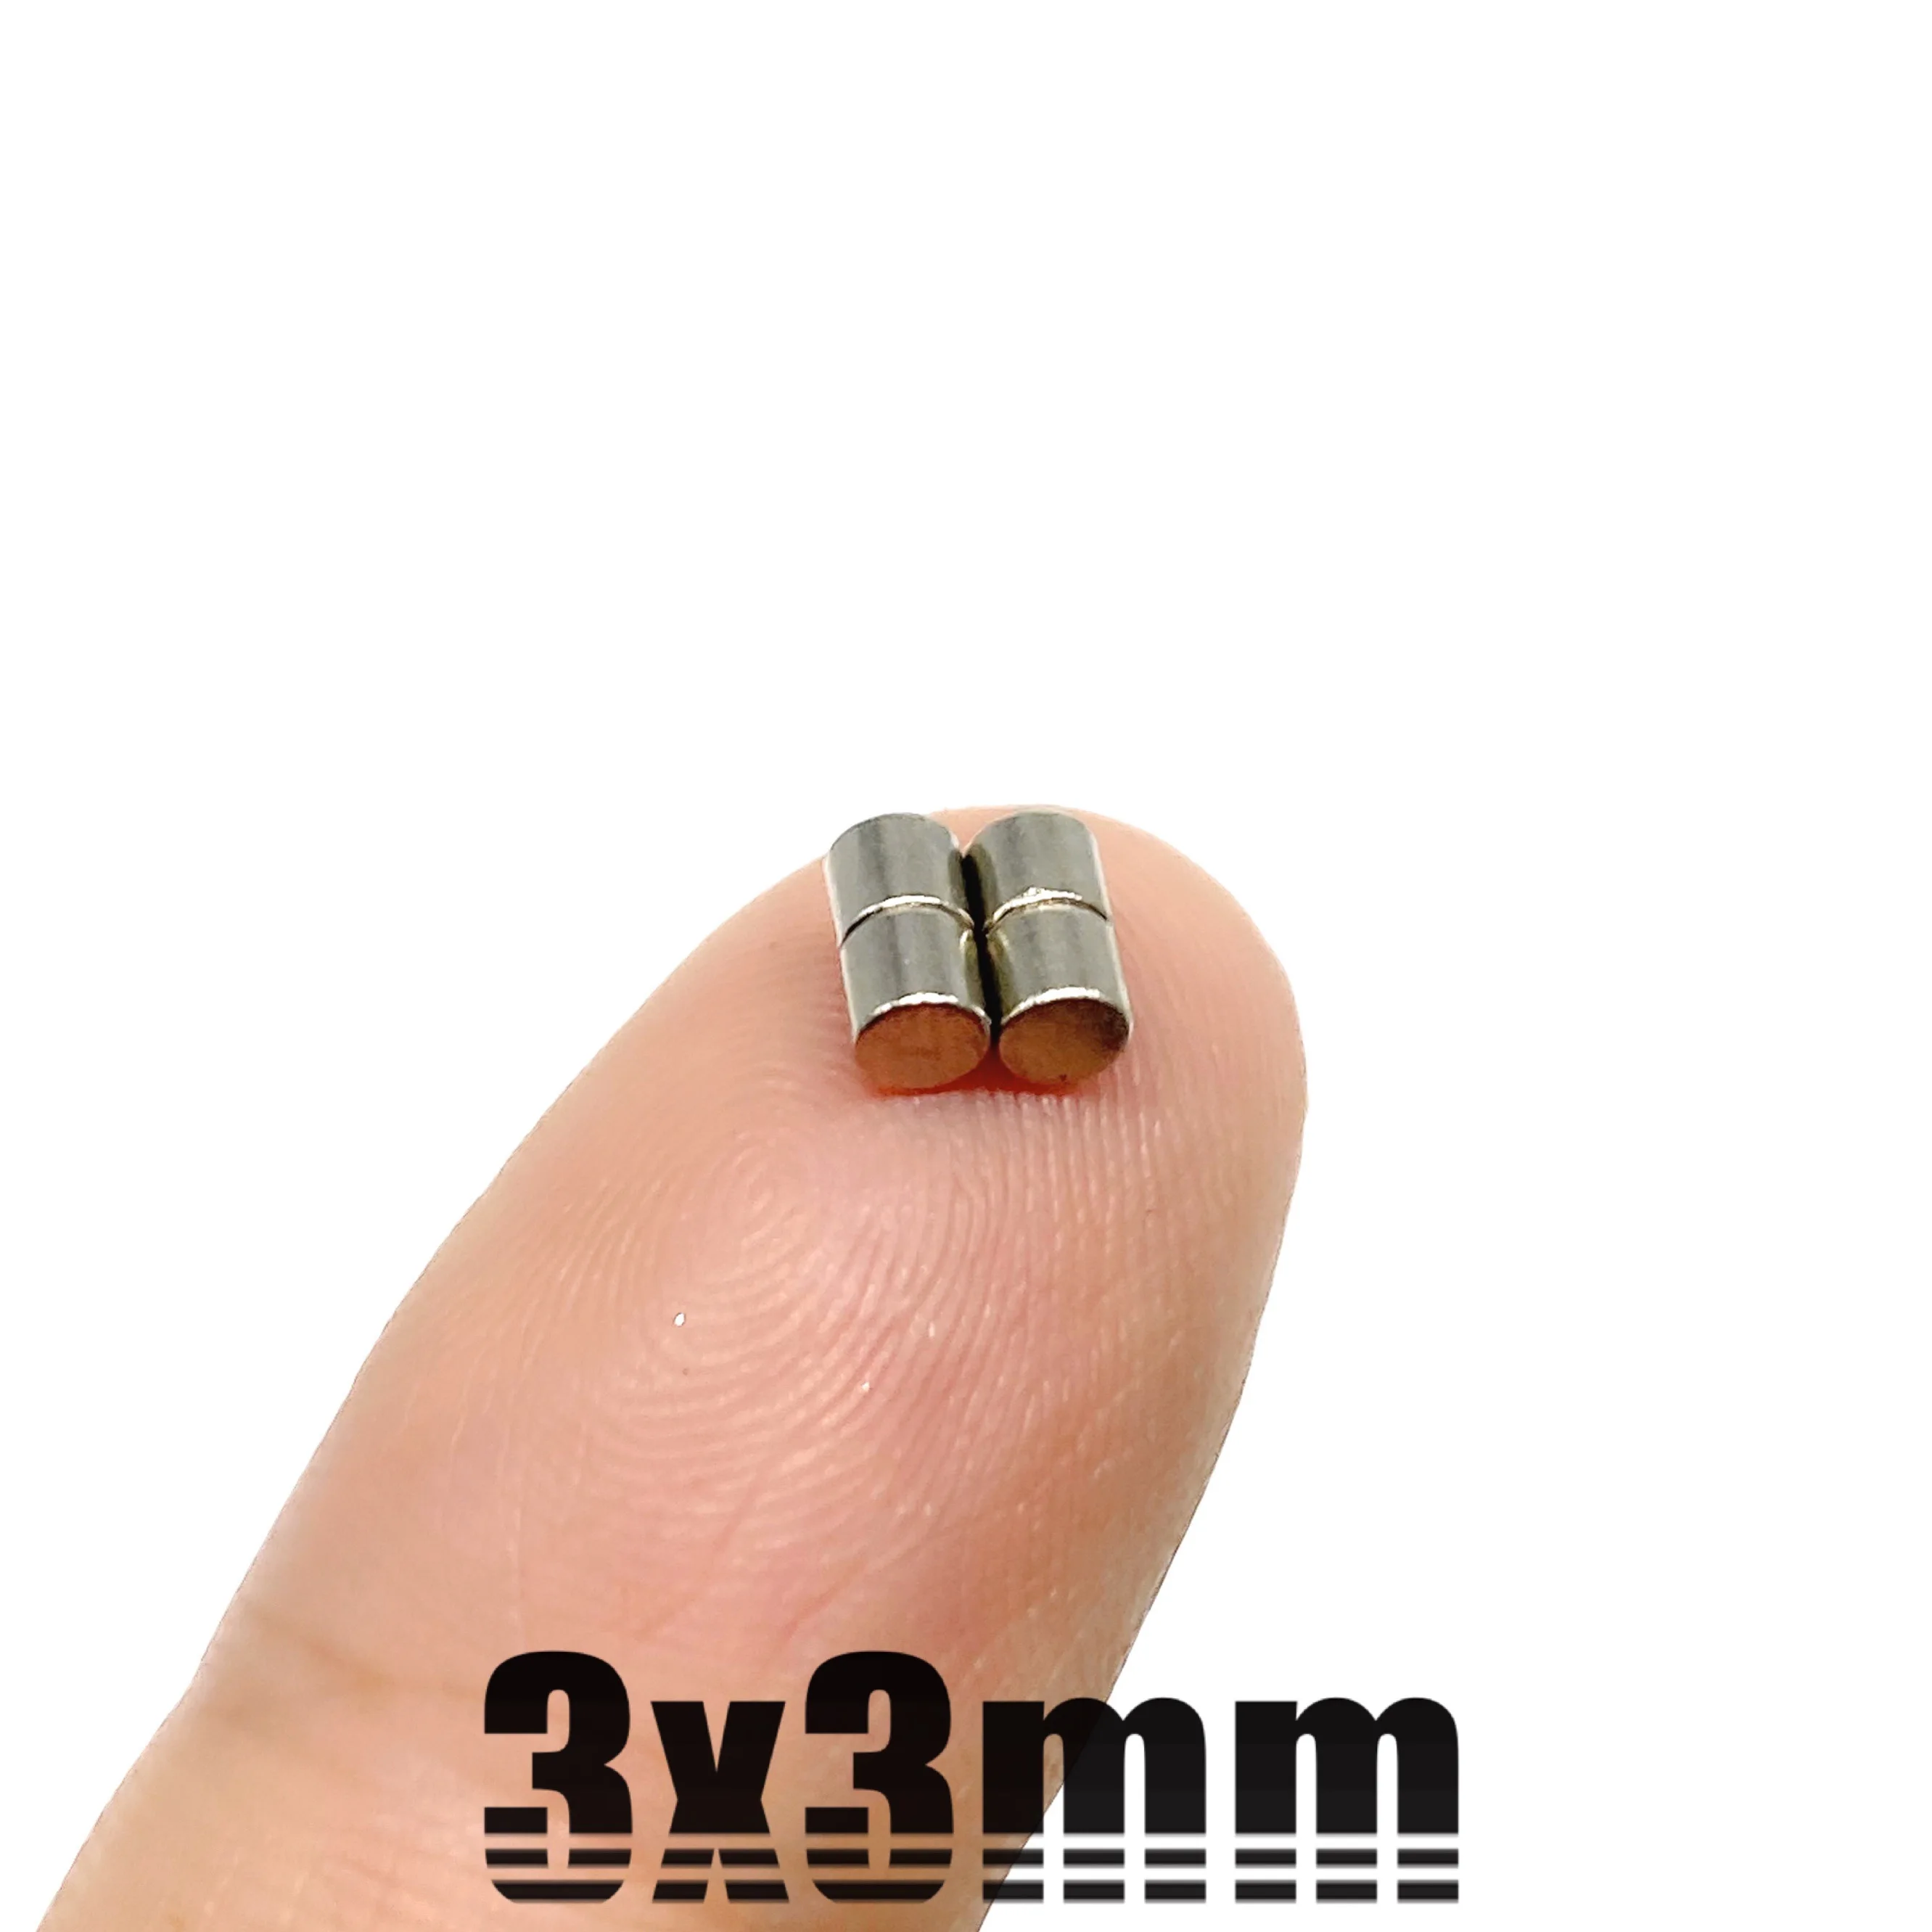 10~10000 ADET 3x3mm Arama Küçük disk Mıknatıs 3mm X 3mm Toplu Küçük Yuvarlak Mıknatıslar 3x3mm Neodimyum yuvarlak N35 Güçlü Mıknatıslar 3 * 3mm